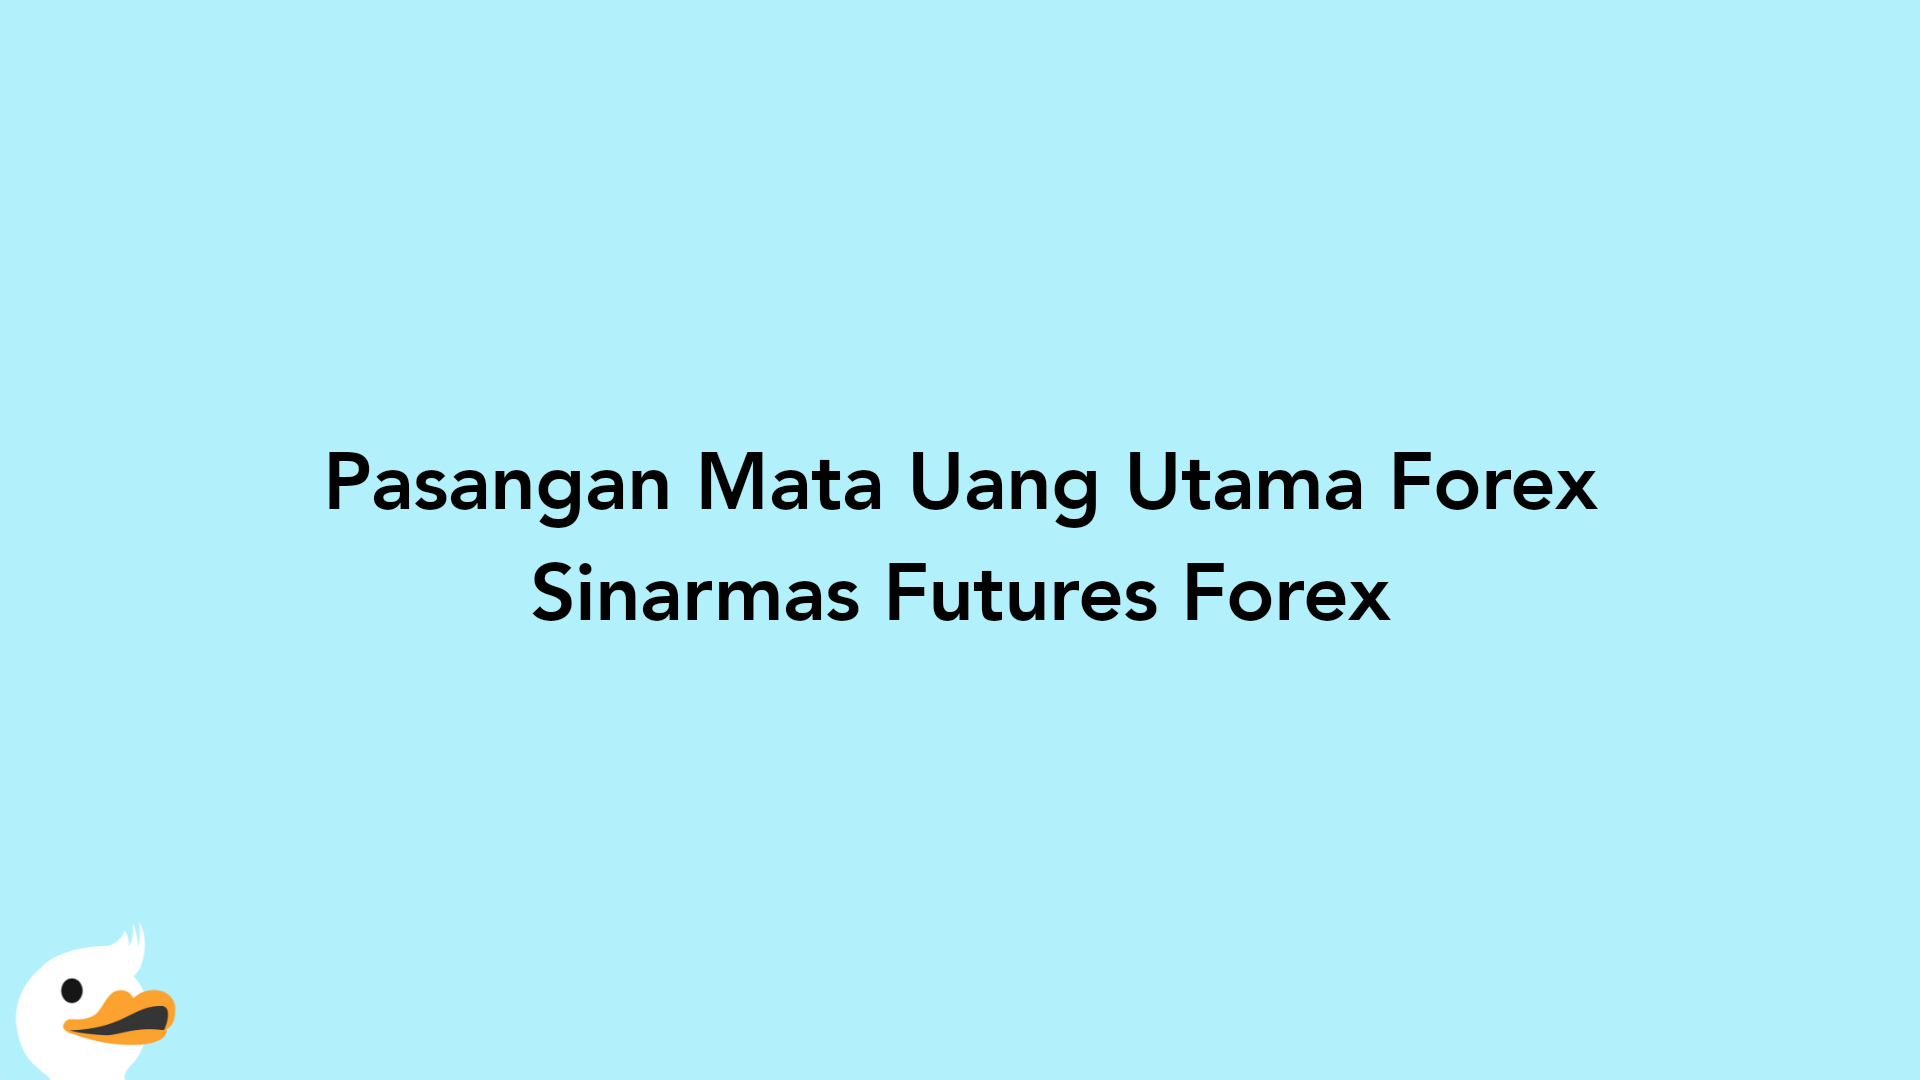 Pasangan Mata Uang Utama Forex Sinarmas Futures Forex